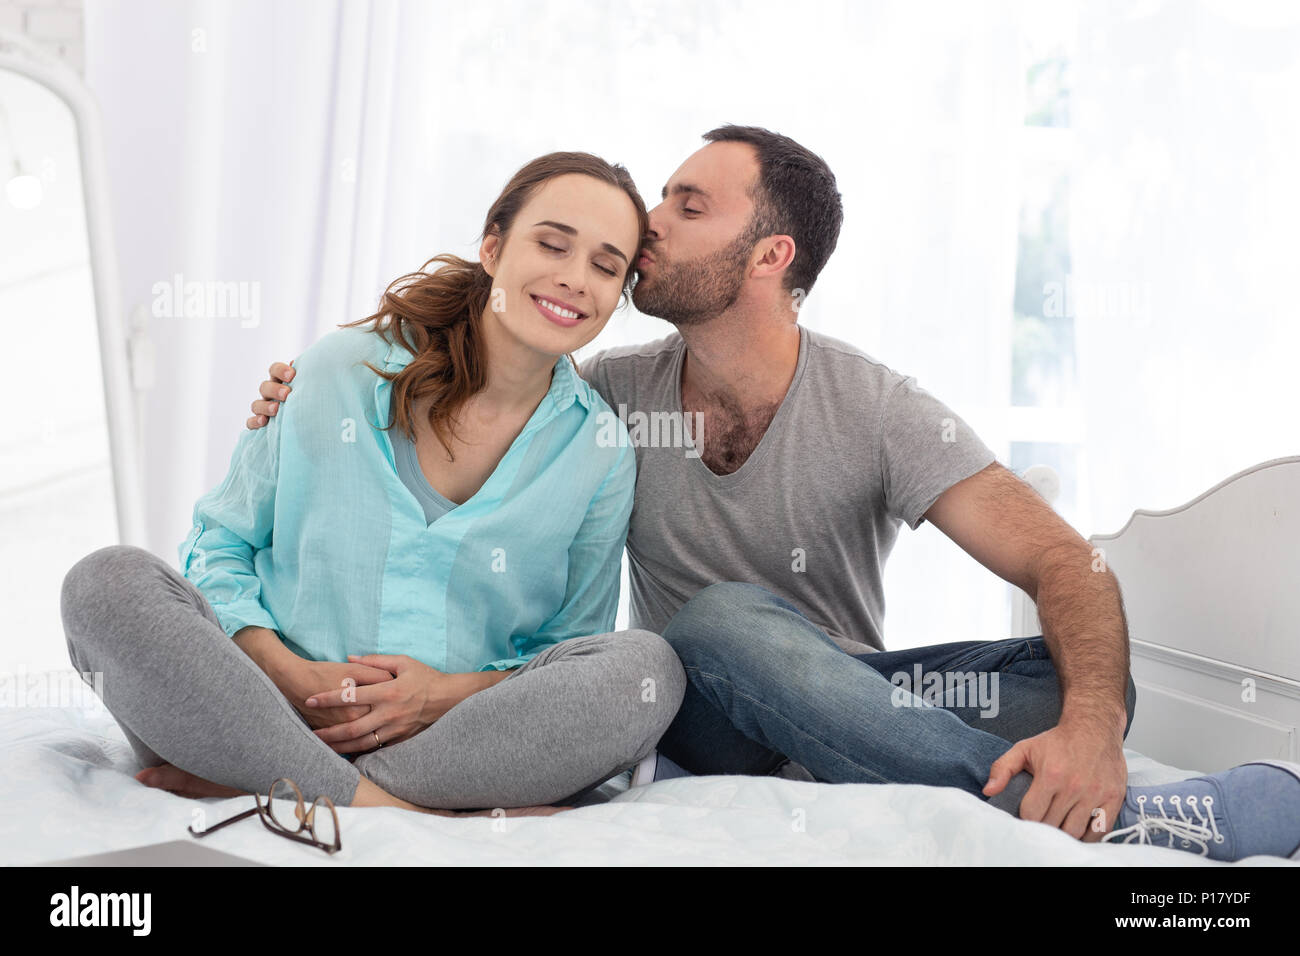 Adorable man adoring pregnant woman Stock Photo